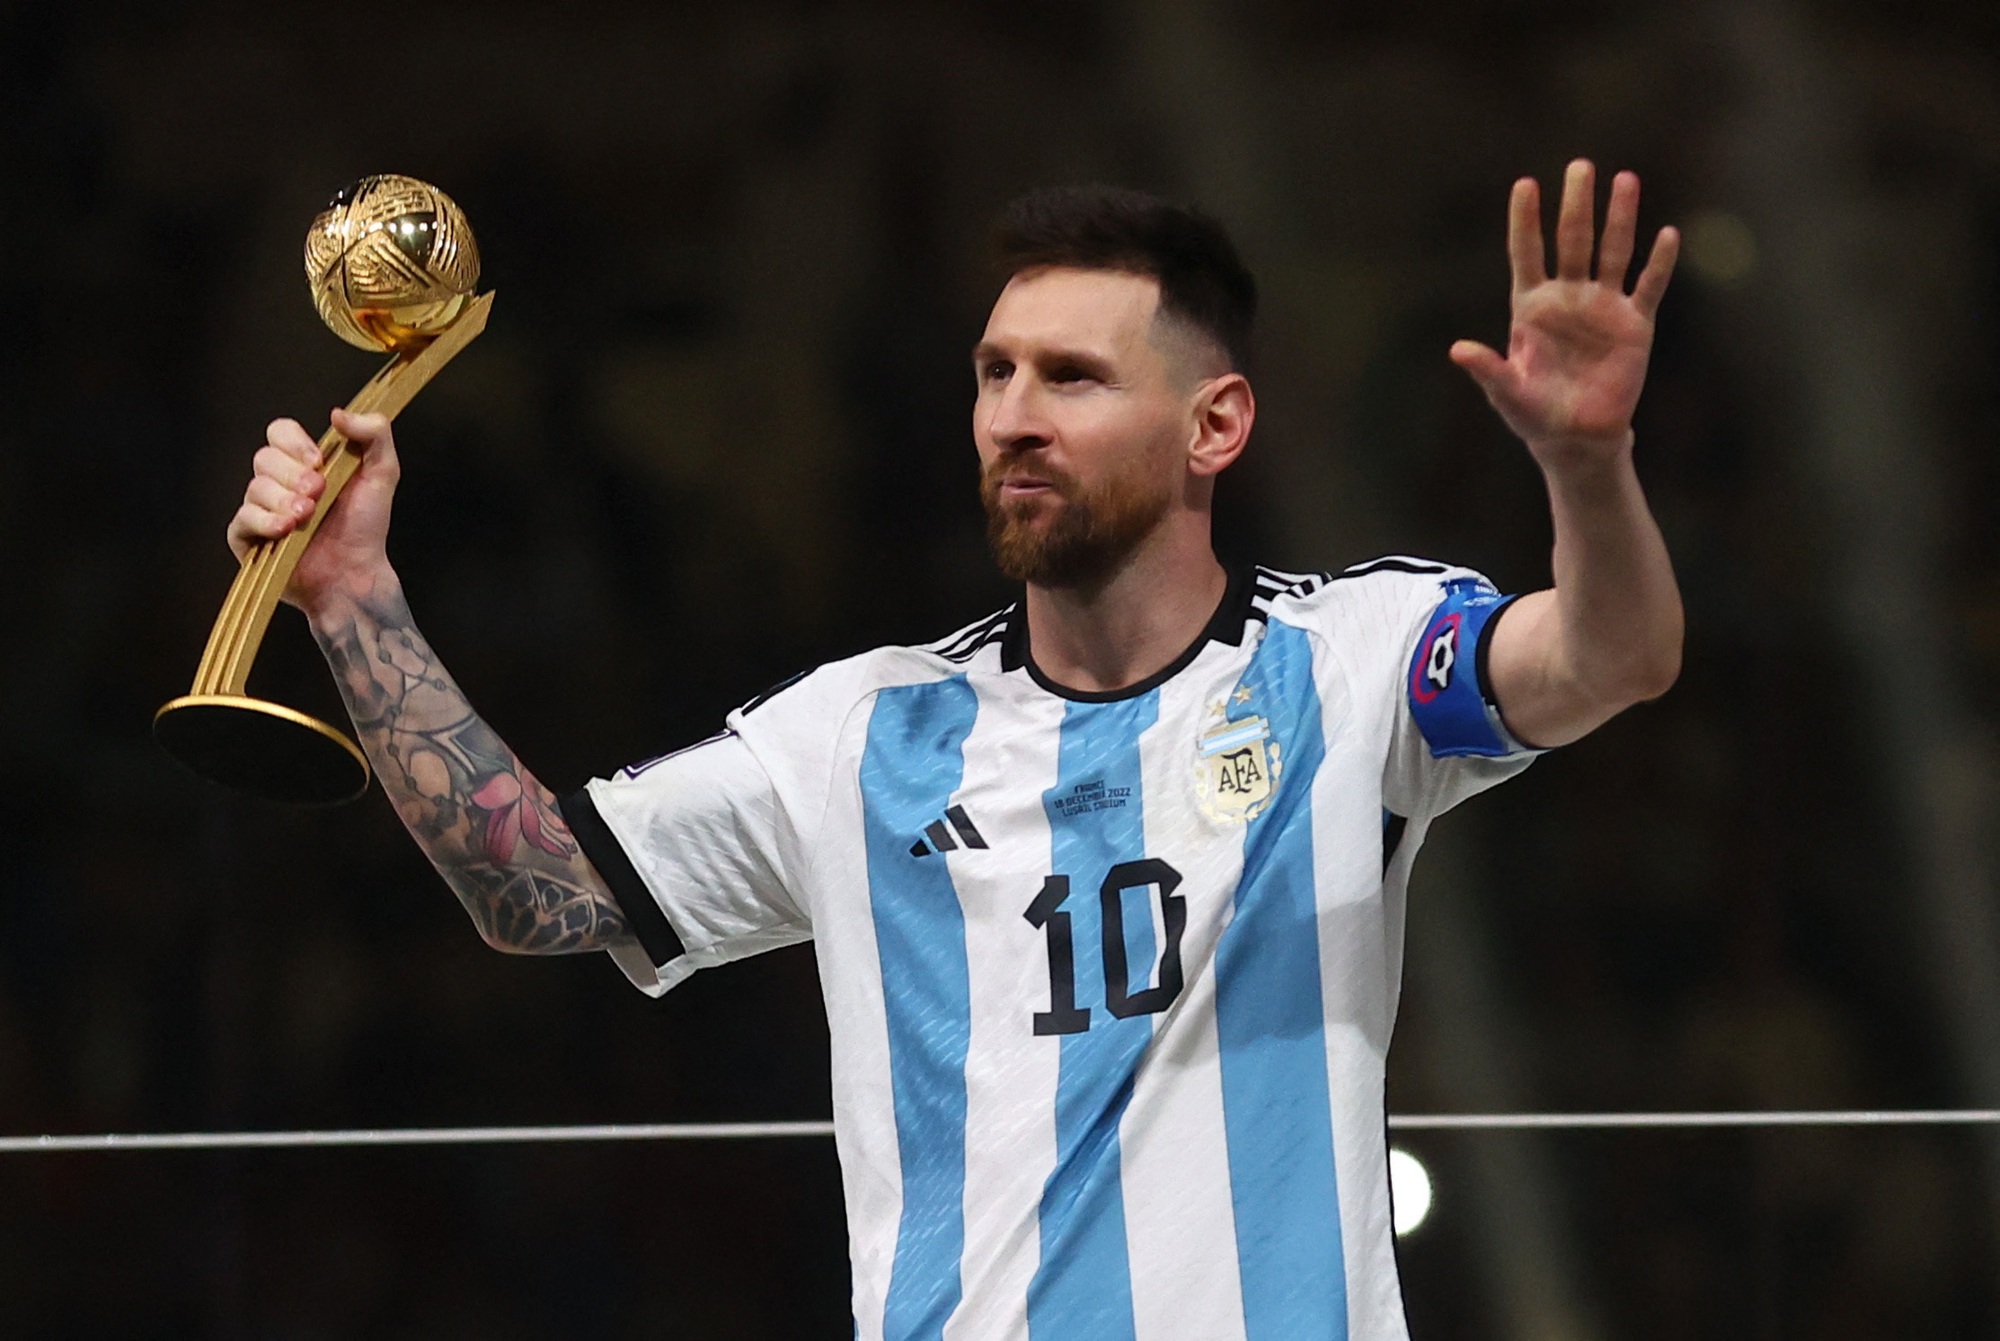 Argentina là một quốc gia đang vươn lên trong bóng đá thế giới, và không giai đoạn nào khác là tuyệt vời hơn để bắt đầu ủng hộ họ. Xem ảnh liên quan đến Argentina sẽ giúp bạn thấu hiểu về sự cổ vũ của những người hâm mộ và tình yêu đối với môn thể thao này.